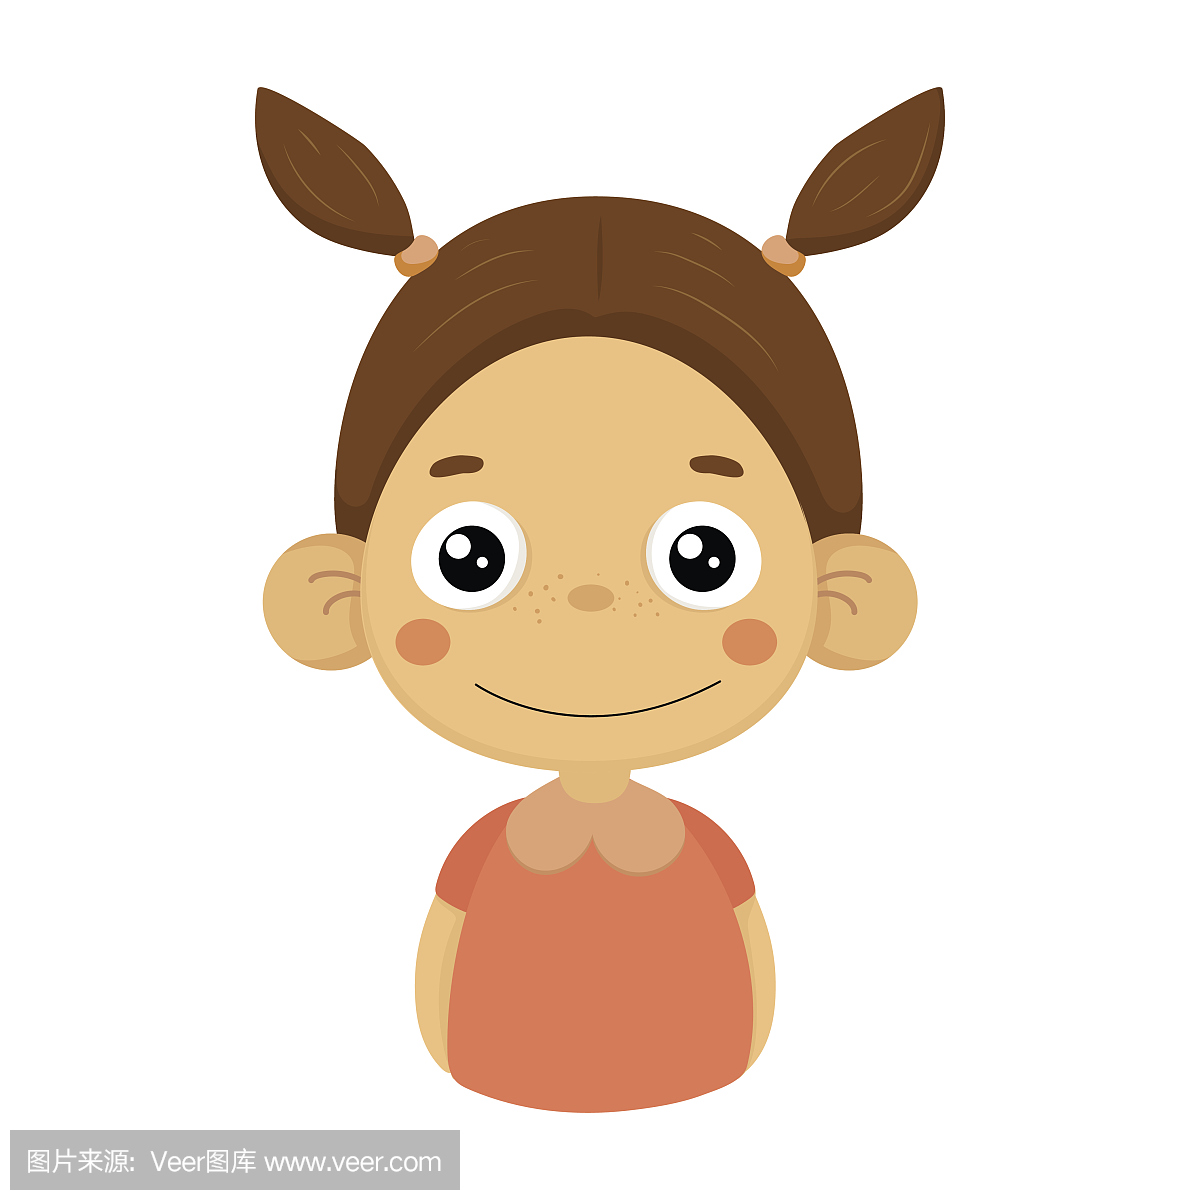 内容微笑小女孩平面卡通肖像表情符号与情感面